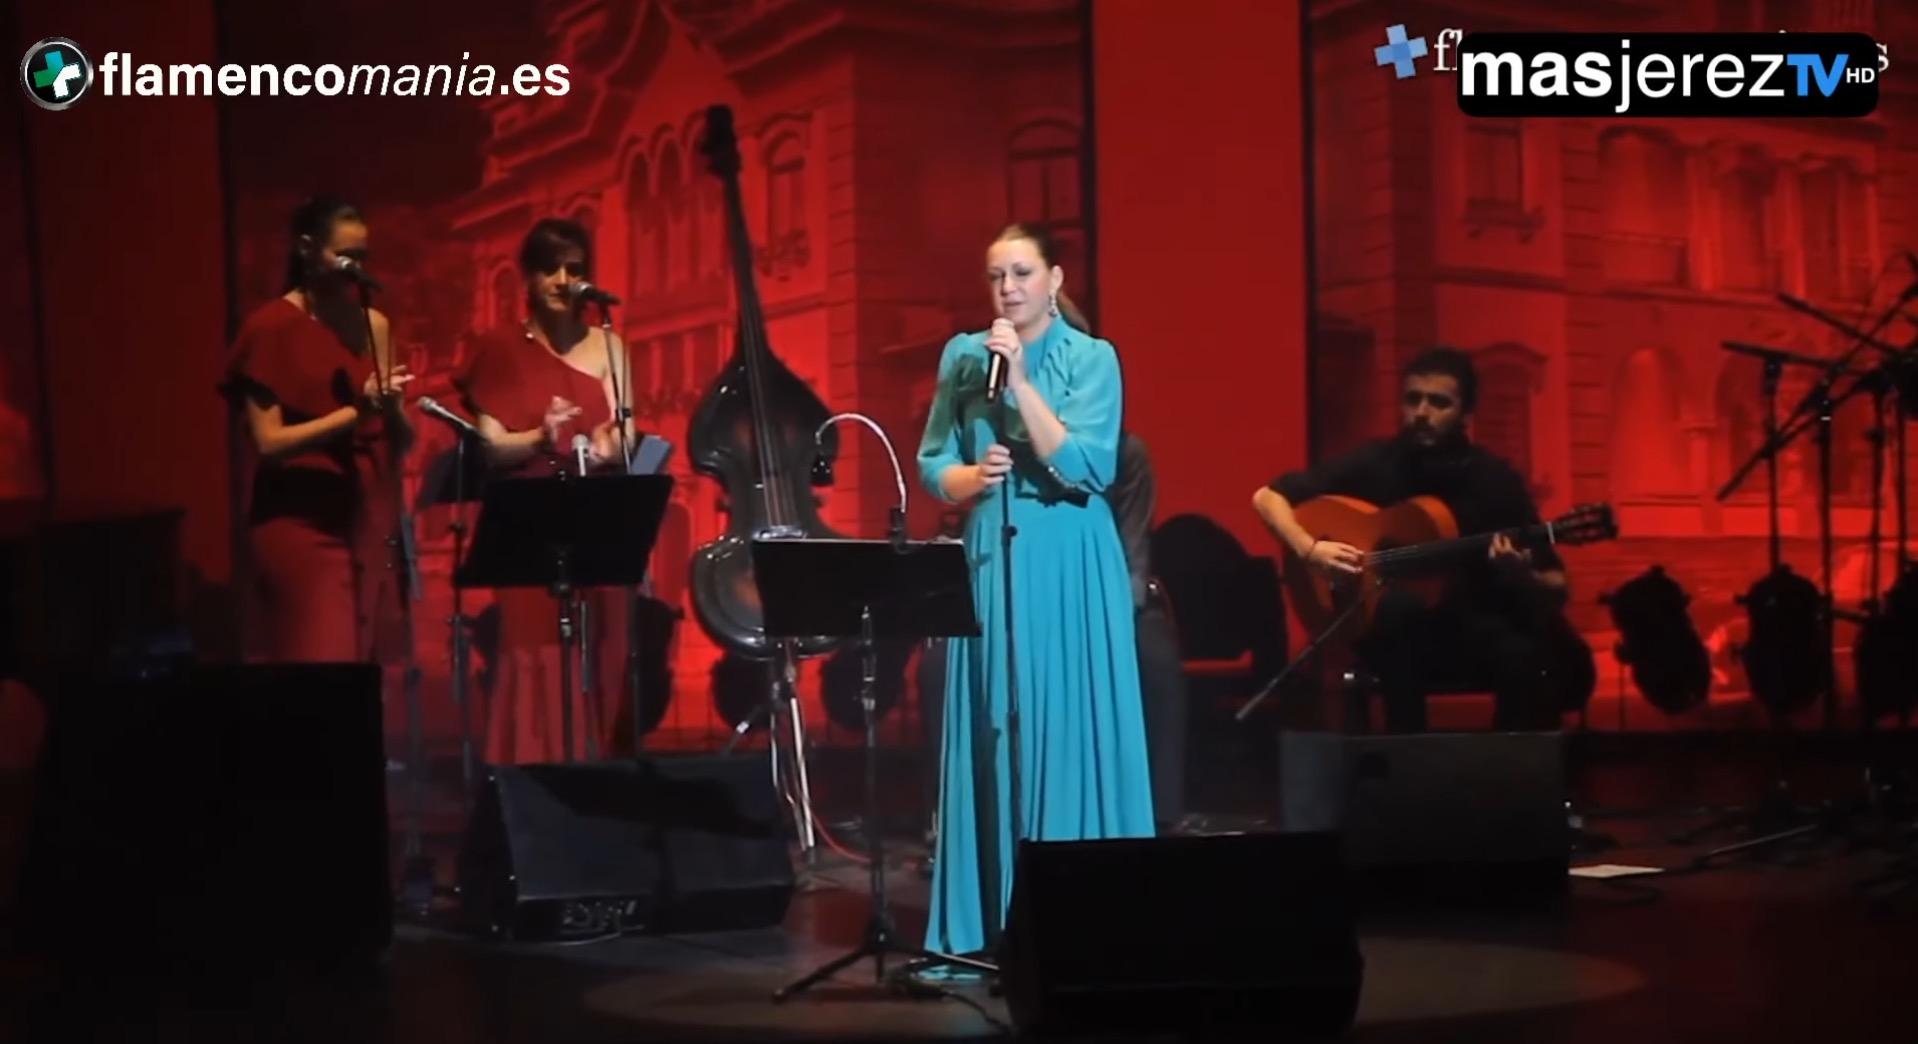 Flamencomanía TV: Día 7 - YoMeQuedoEnCasa un viernes por la noche